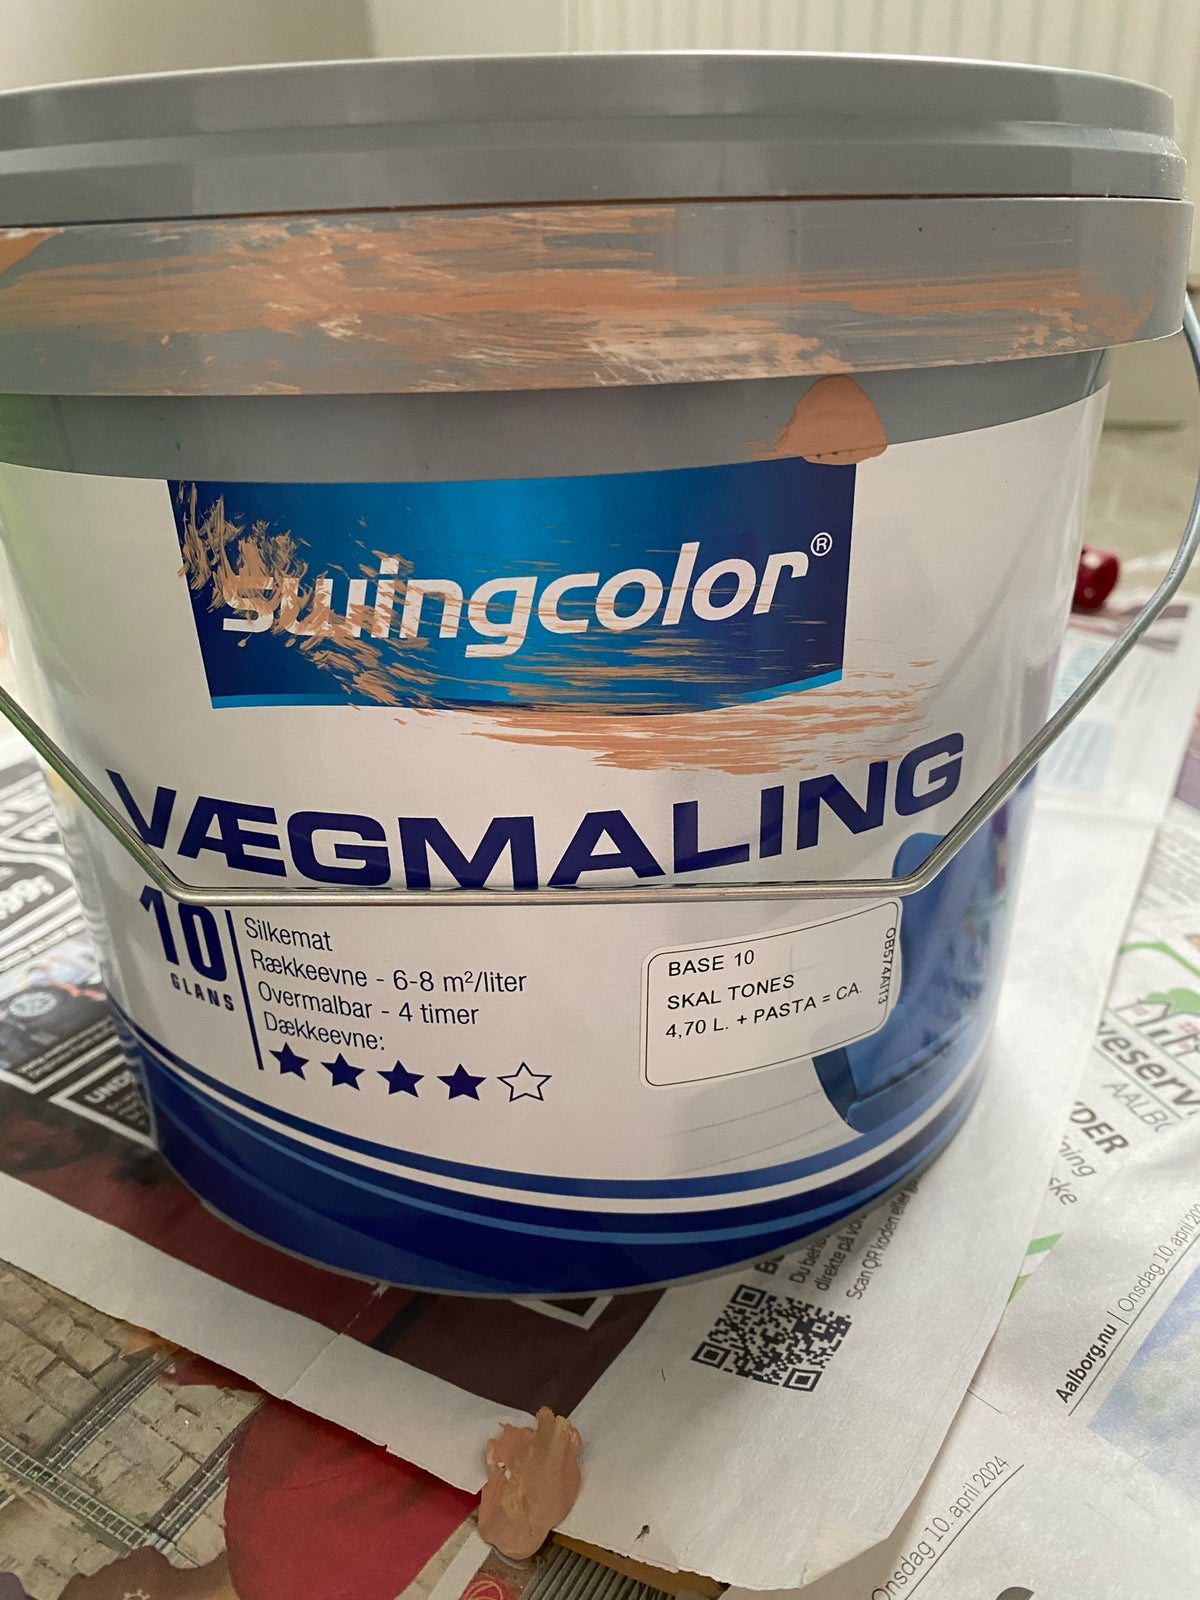 Vægmaling, Swingcolor, 5 liter